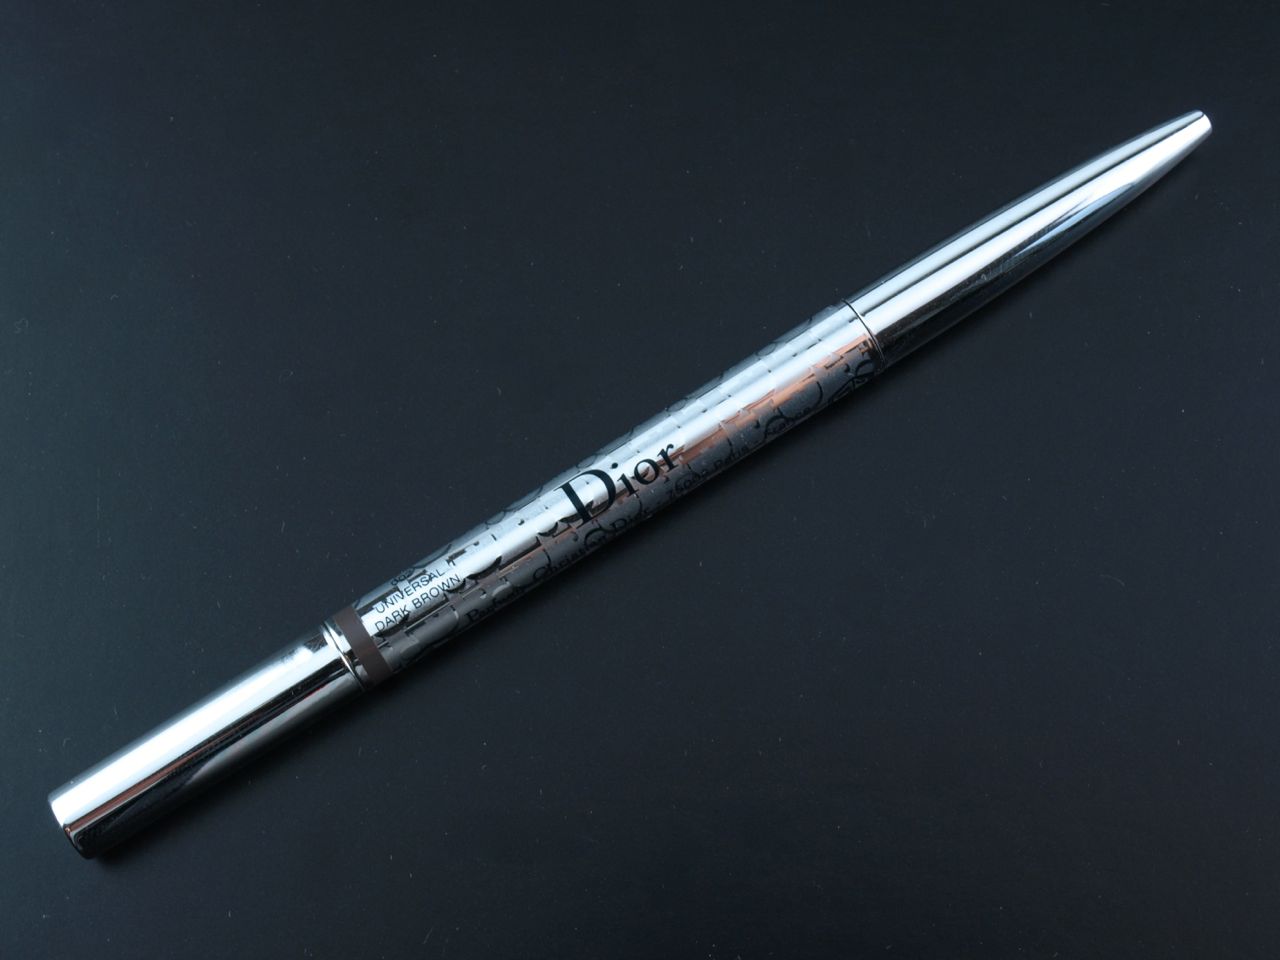 dior ultra fine precision brow pencil